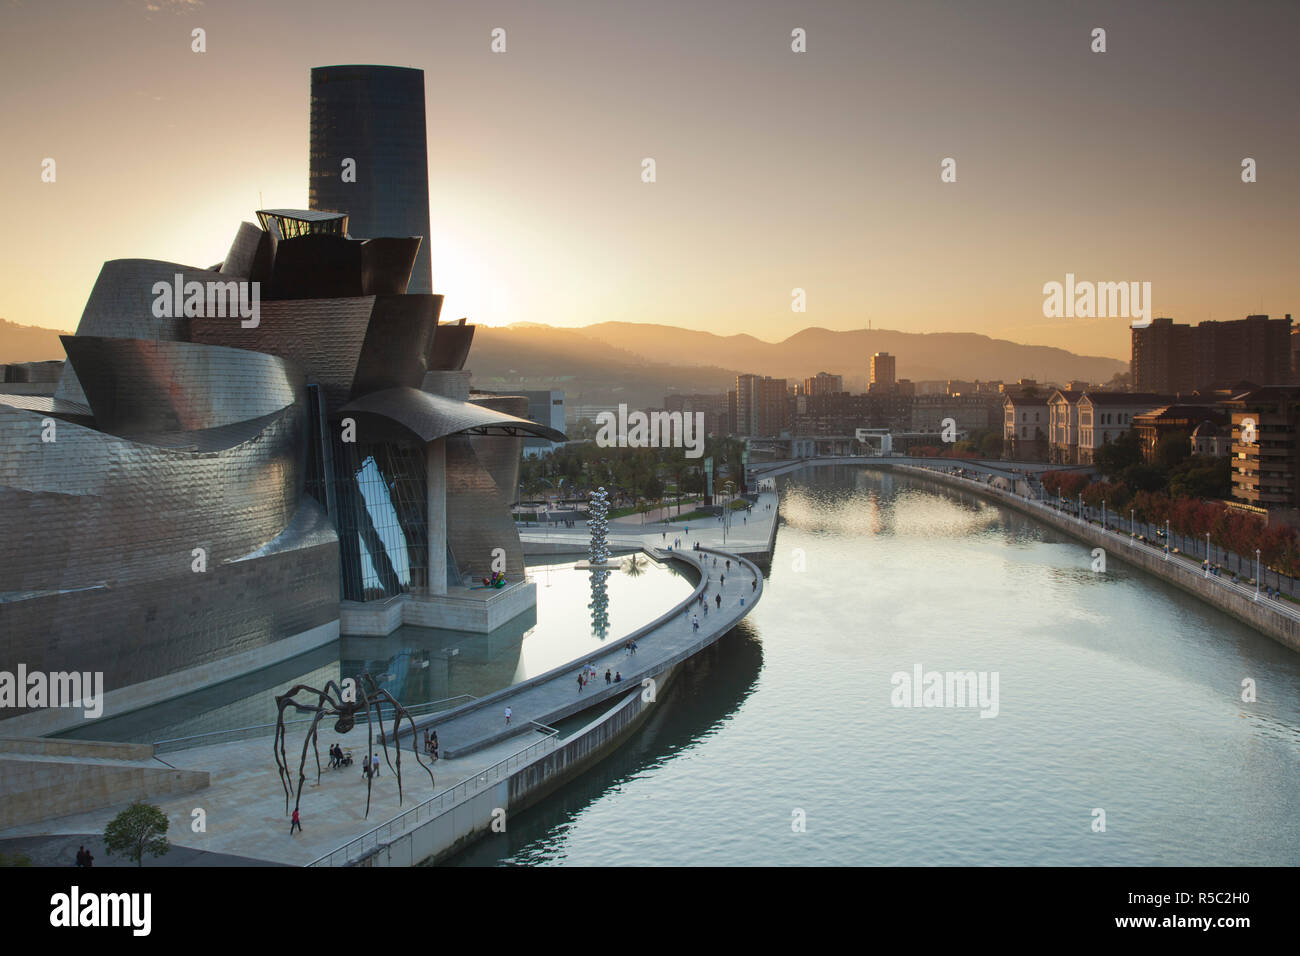 España, el País Vasco, provincia de Vizcaya, Bilbao, el Museo Guggenheim, diseñado por Frank Gehry con araña Maman, escultura de Louise Bourgeois Foto de stock